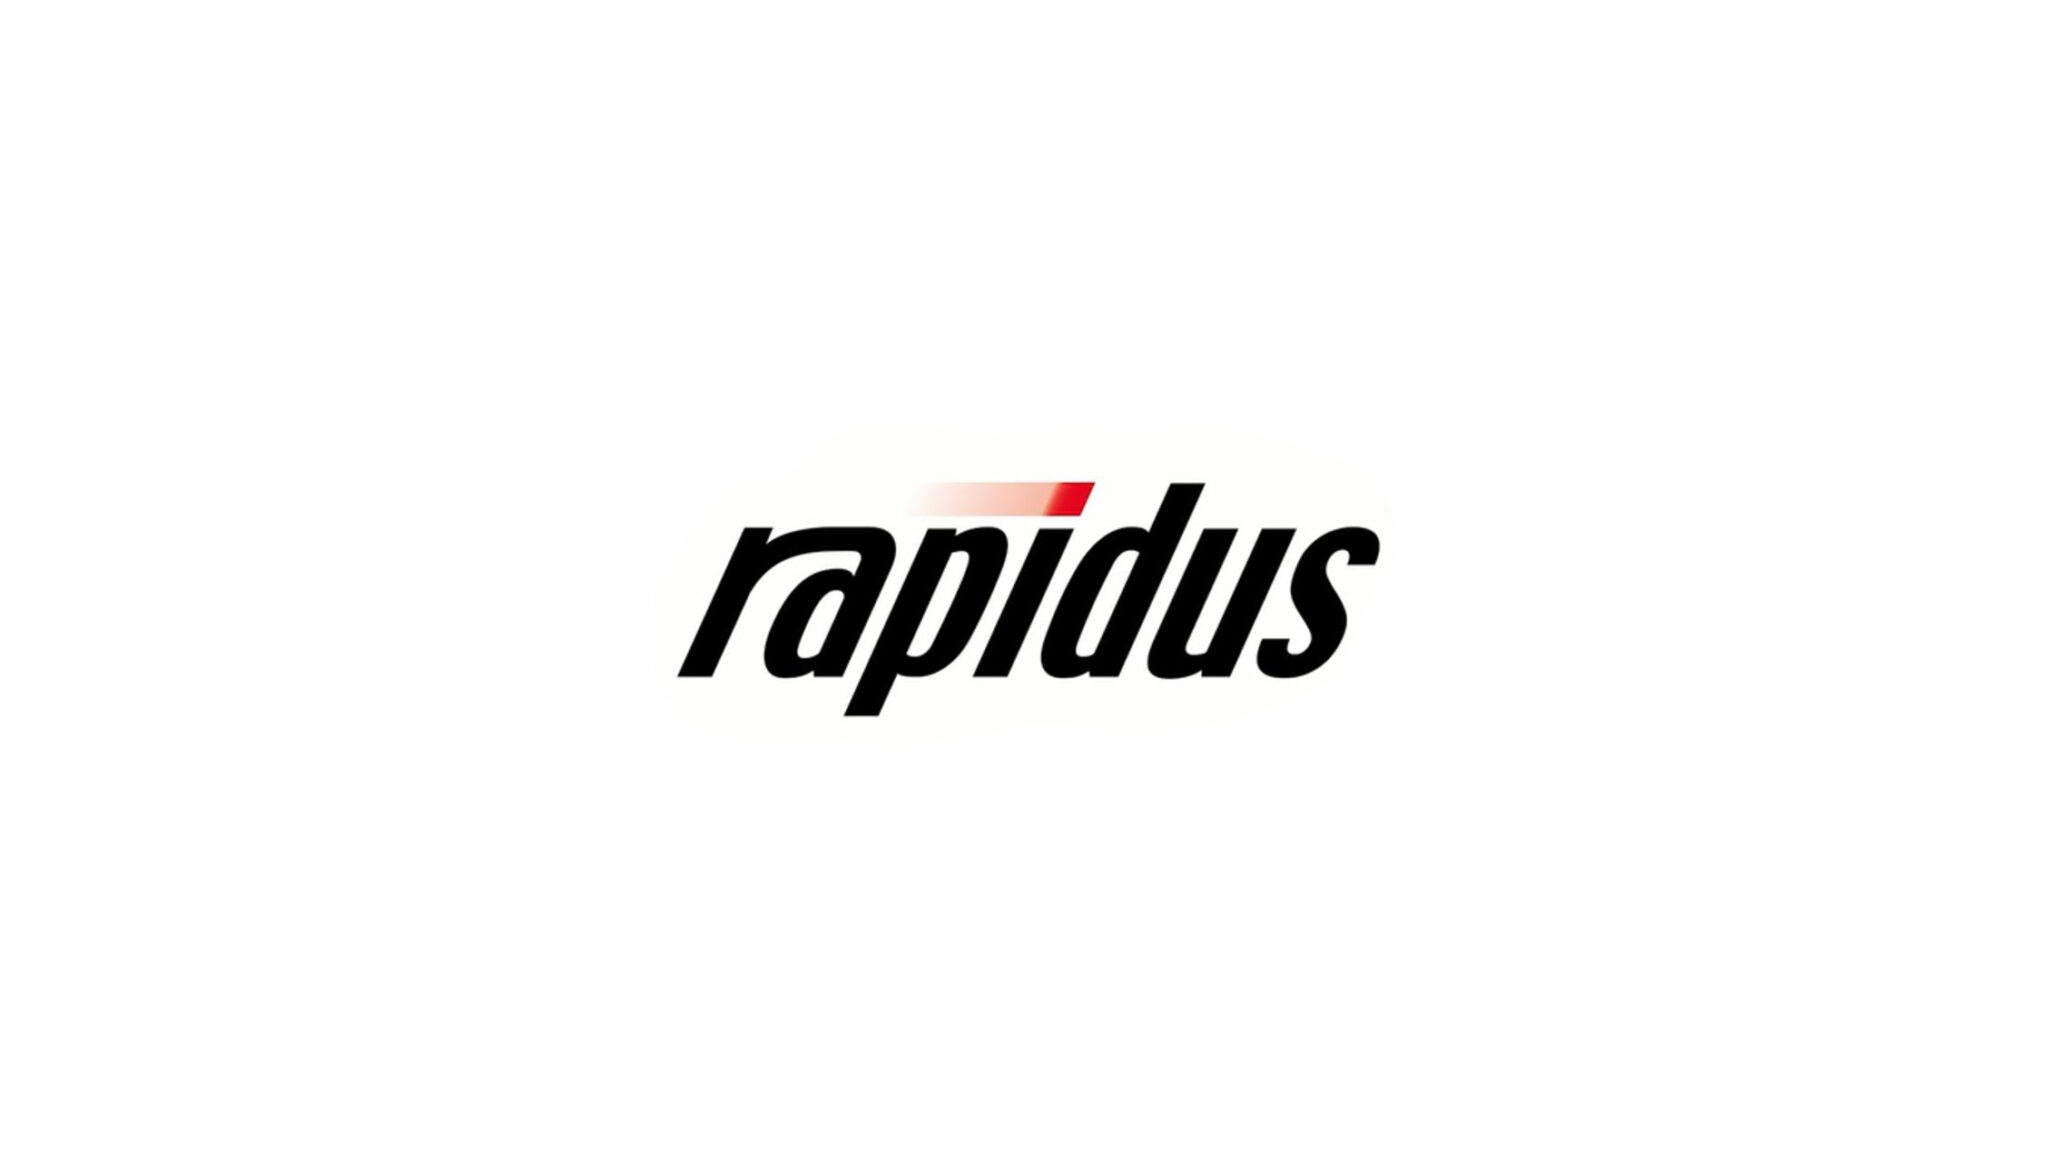 Rapidus logotype